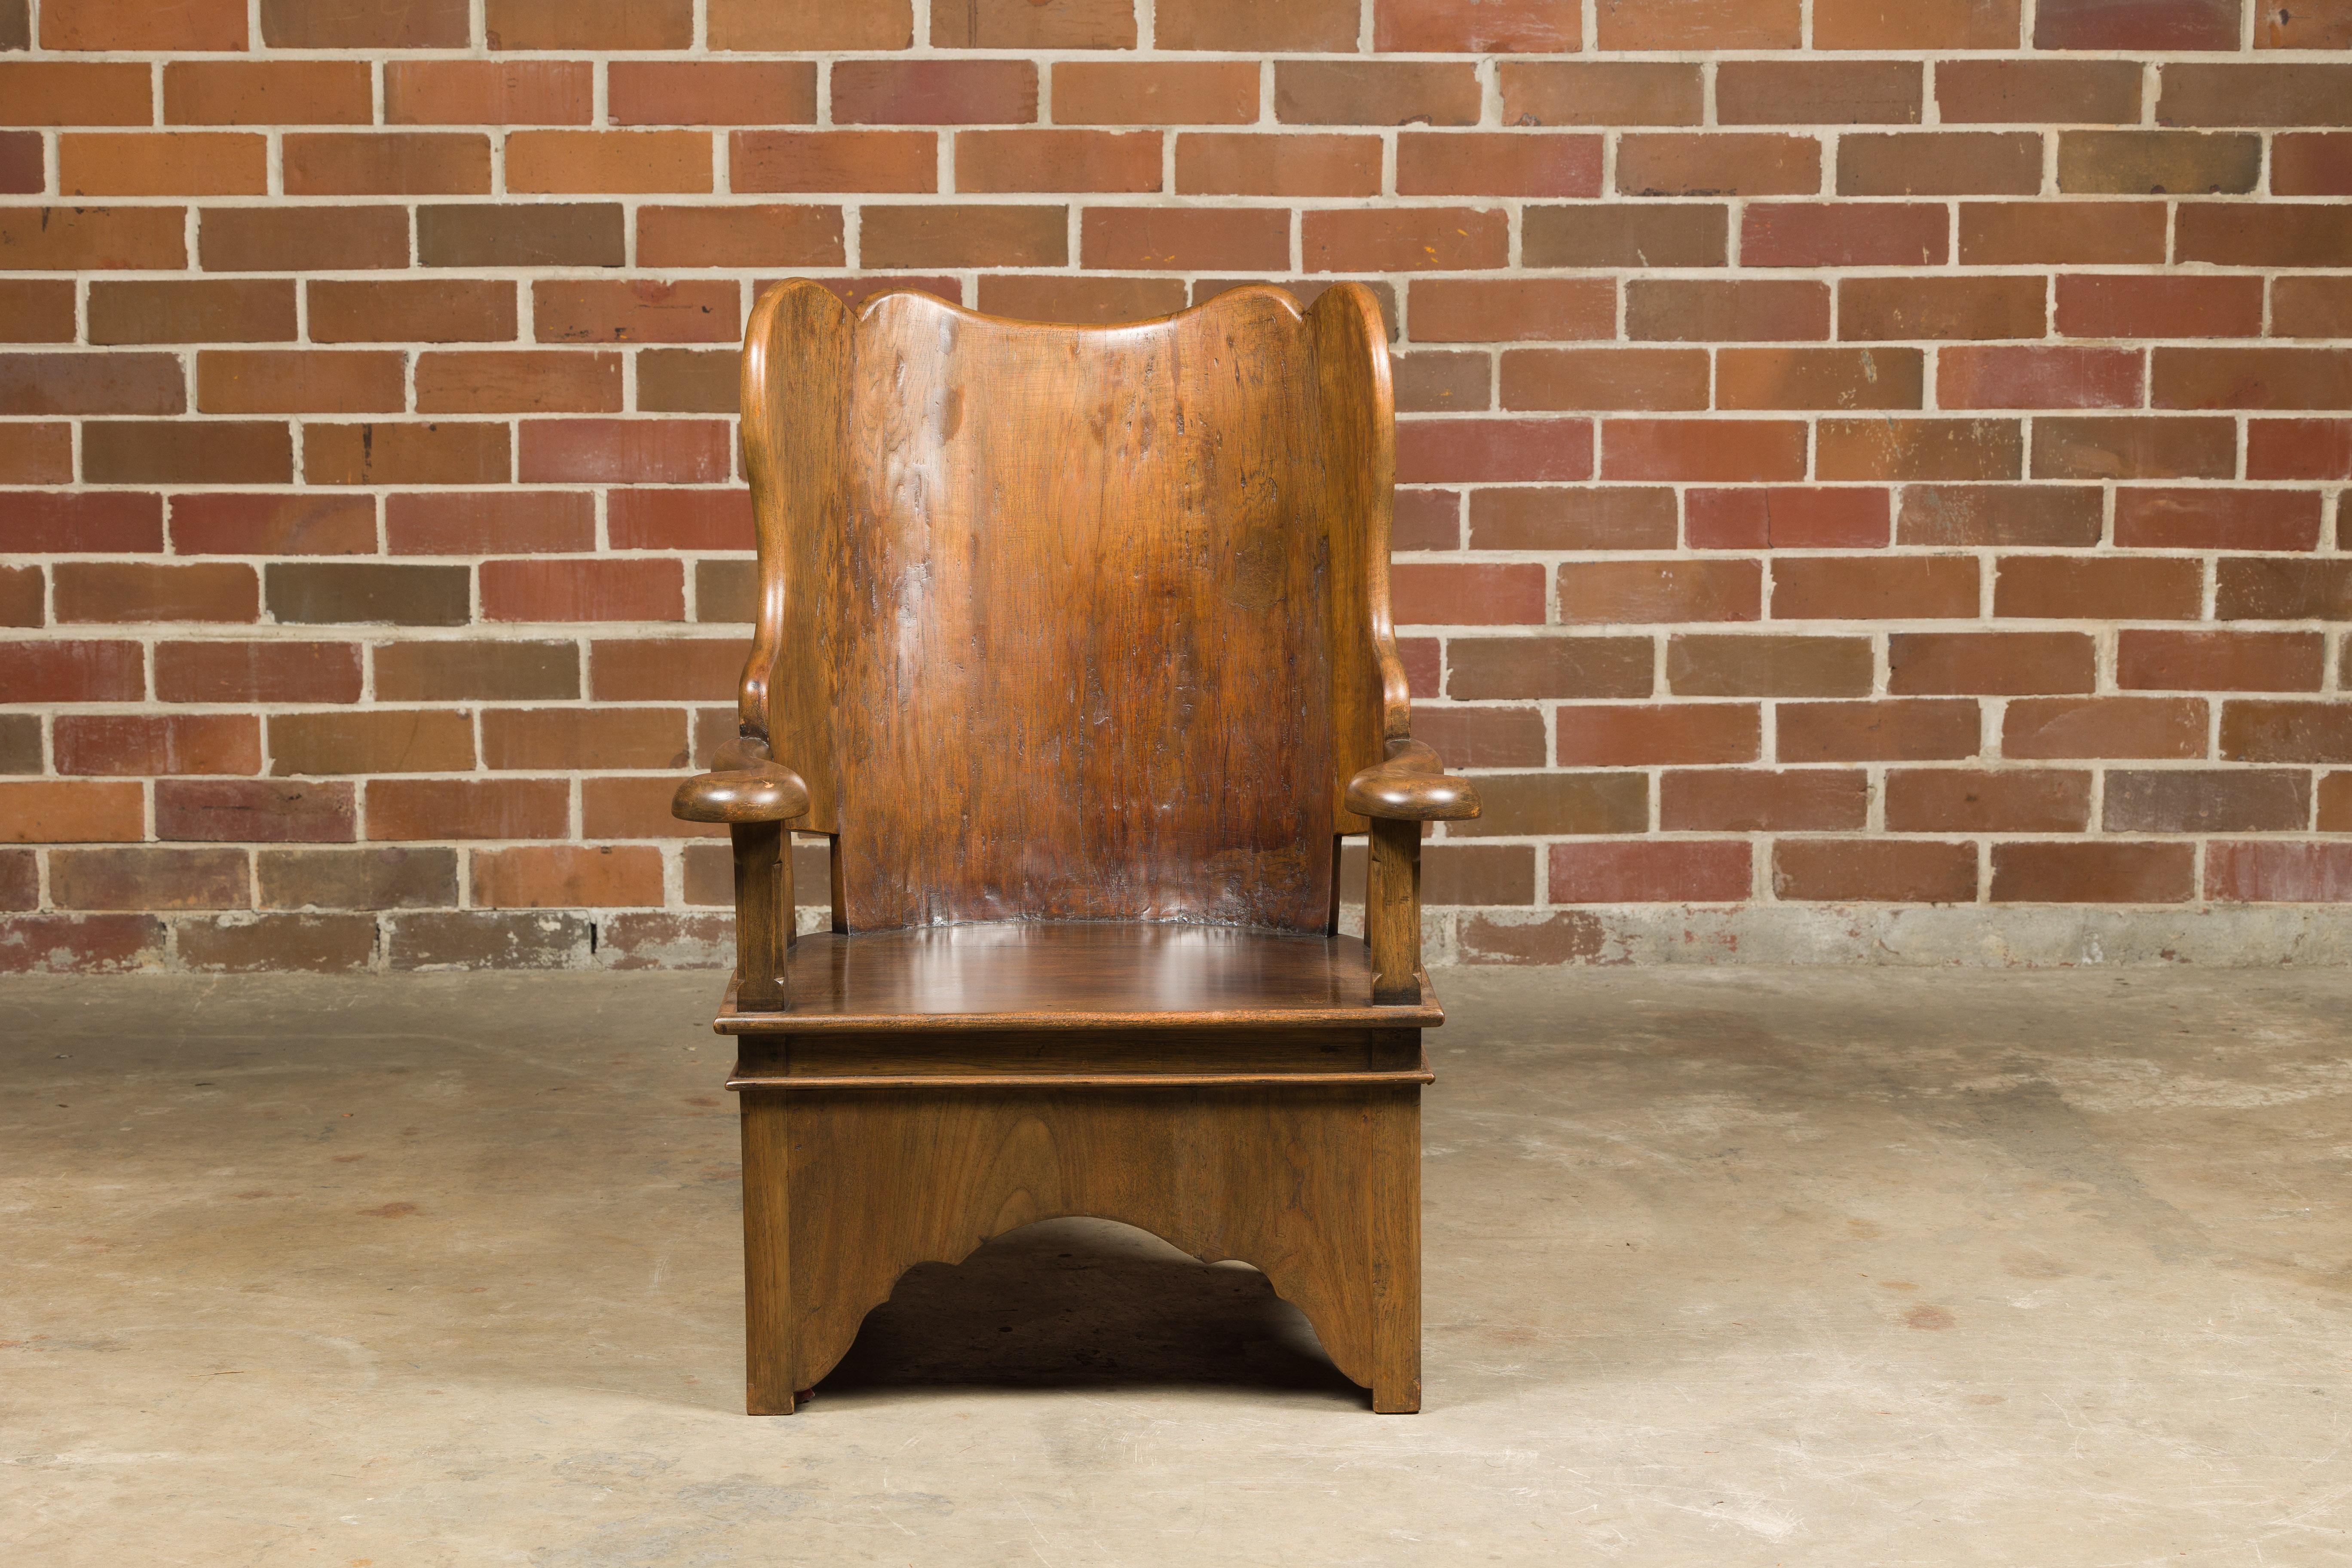 Chaise rustique en noyer anglais du 19e siècle avec des accoudoirs incurvés et une base sculptée. Cette chaise rustique en noyer anglais fait remonter l'ambiance de votre maison dans le temps. Elle témoigne de l'artisanat du XIXe siècle et du charme